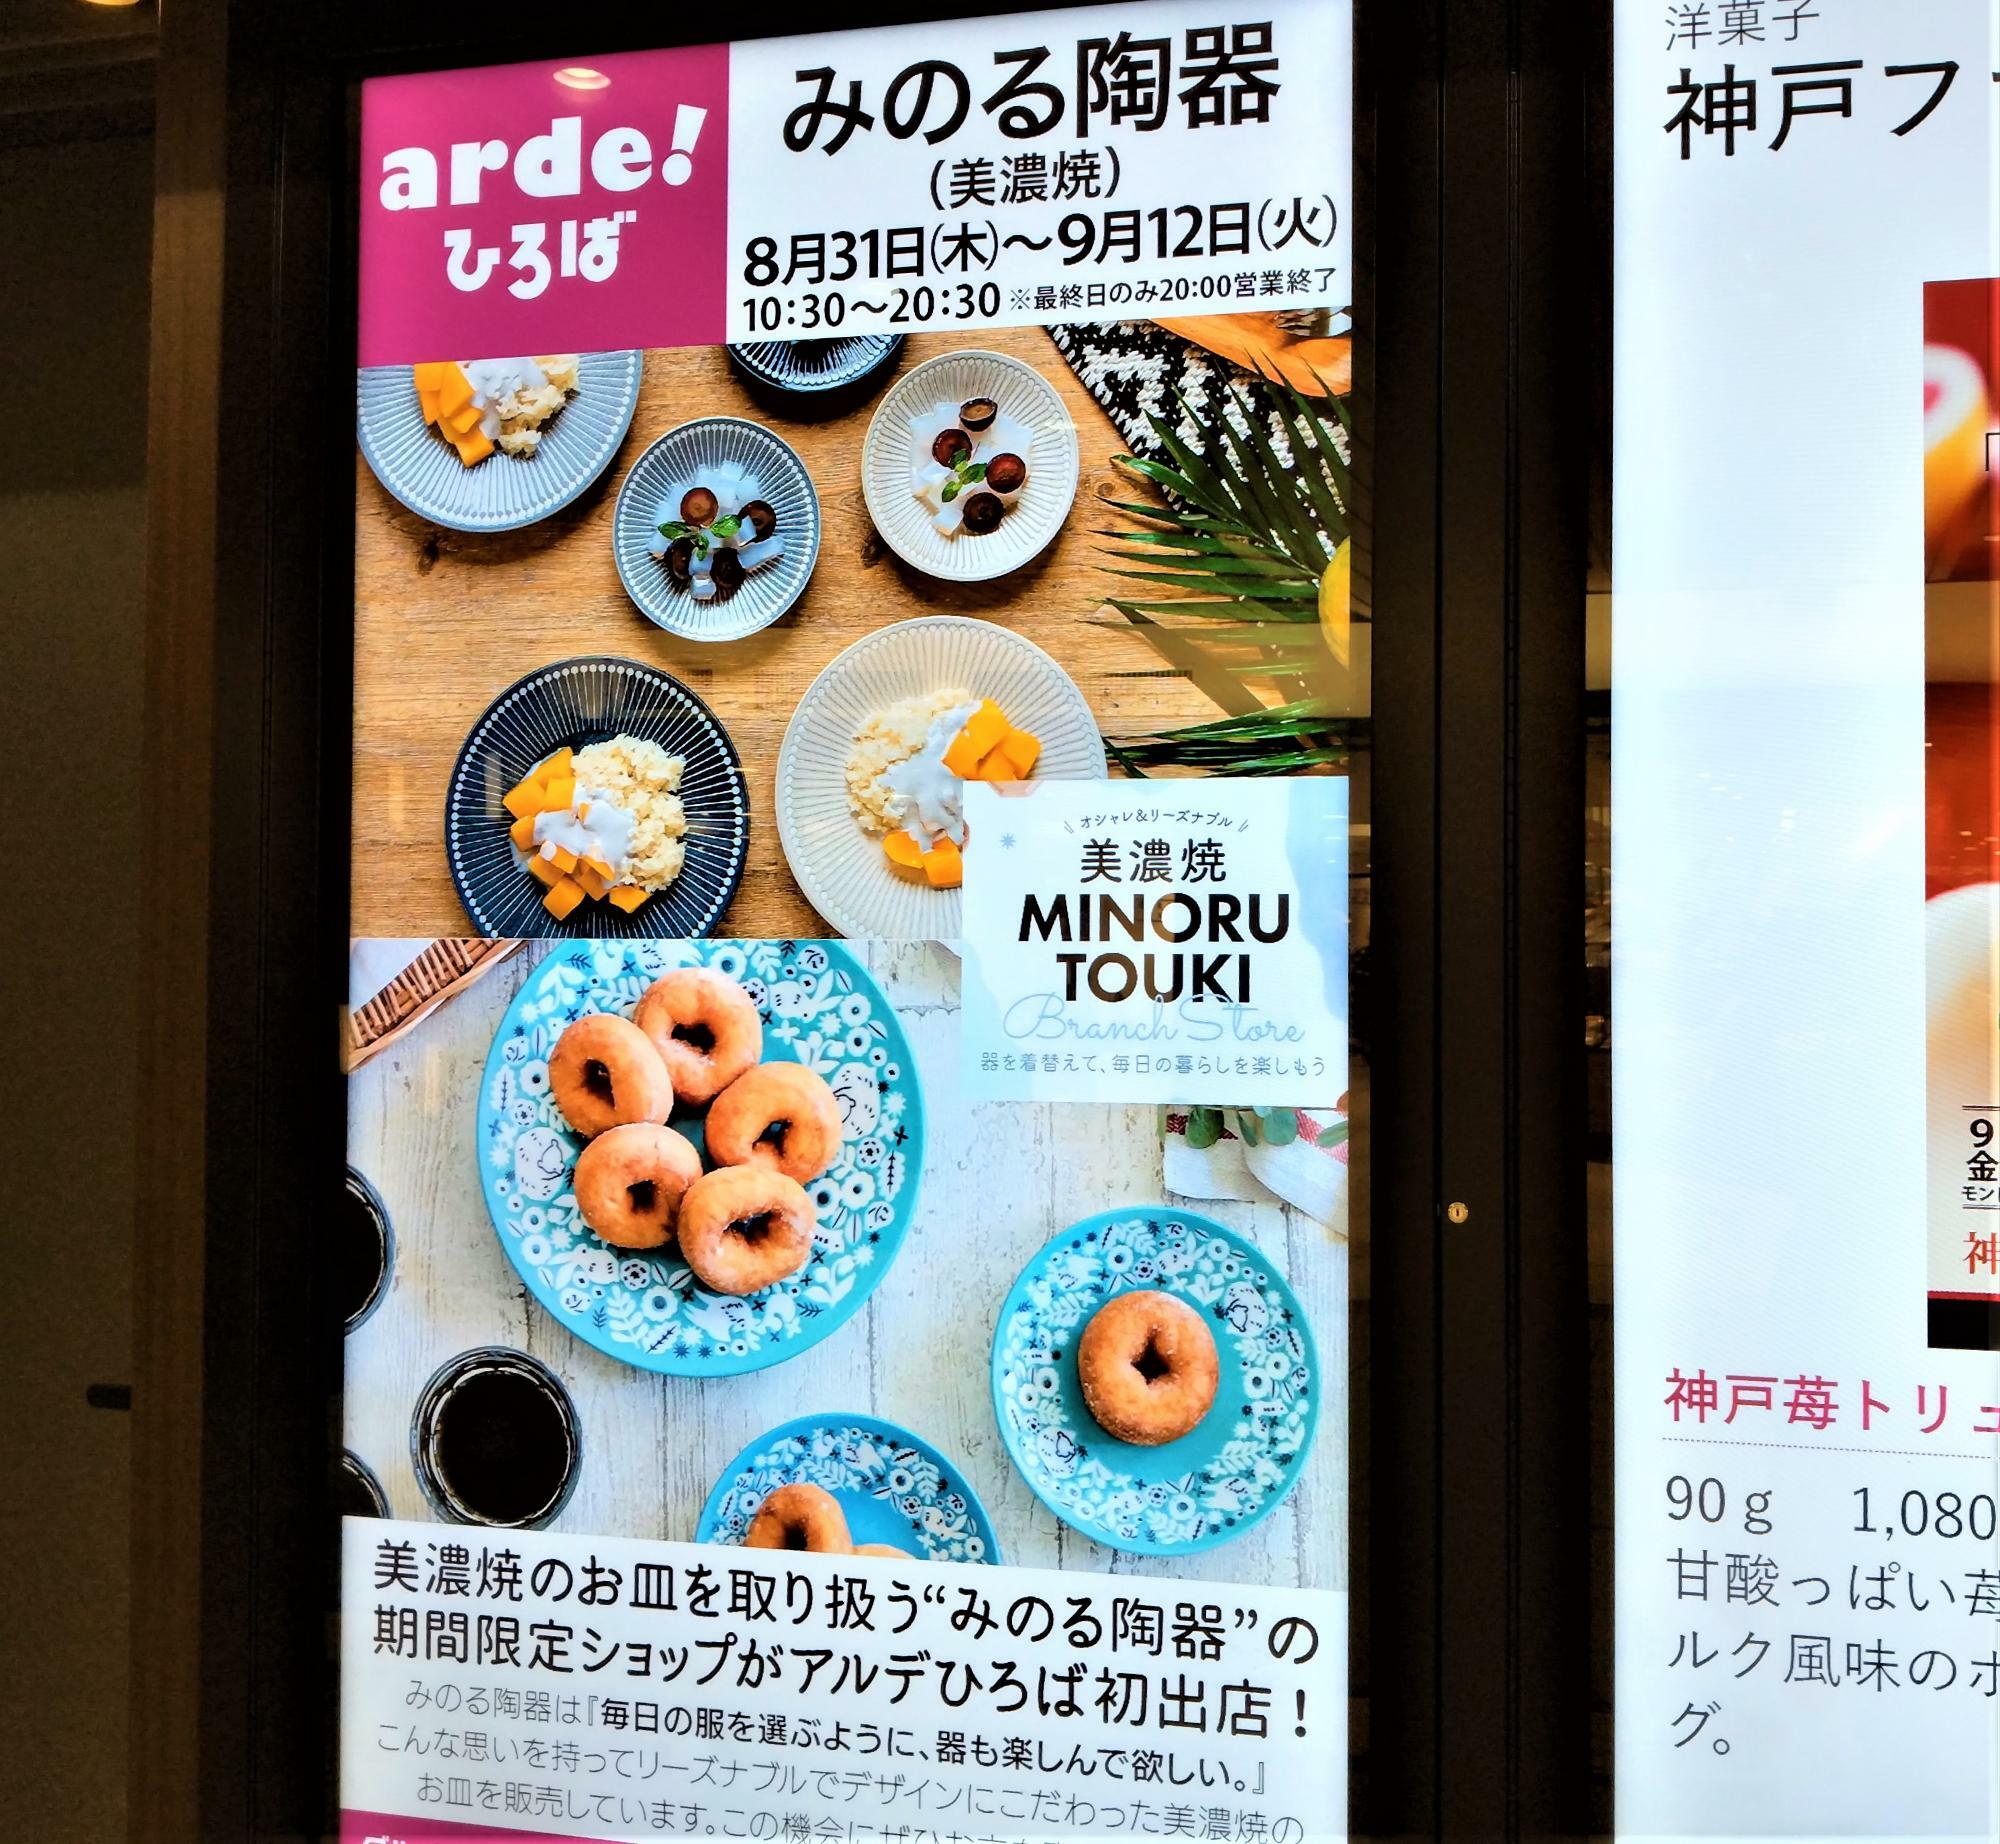 新大阪駅のあちこちで、見つけることが出来る「みのる陶器」の催事。